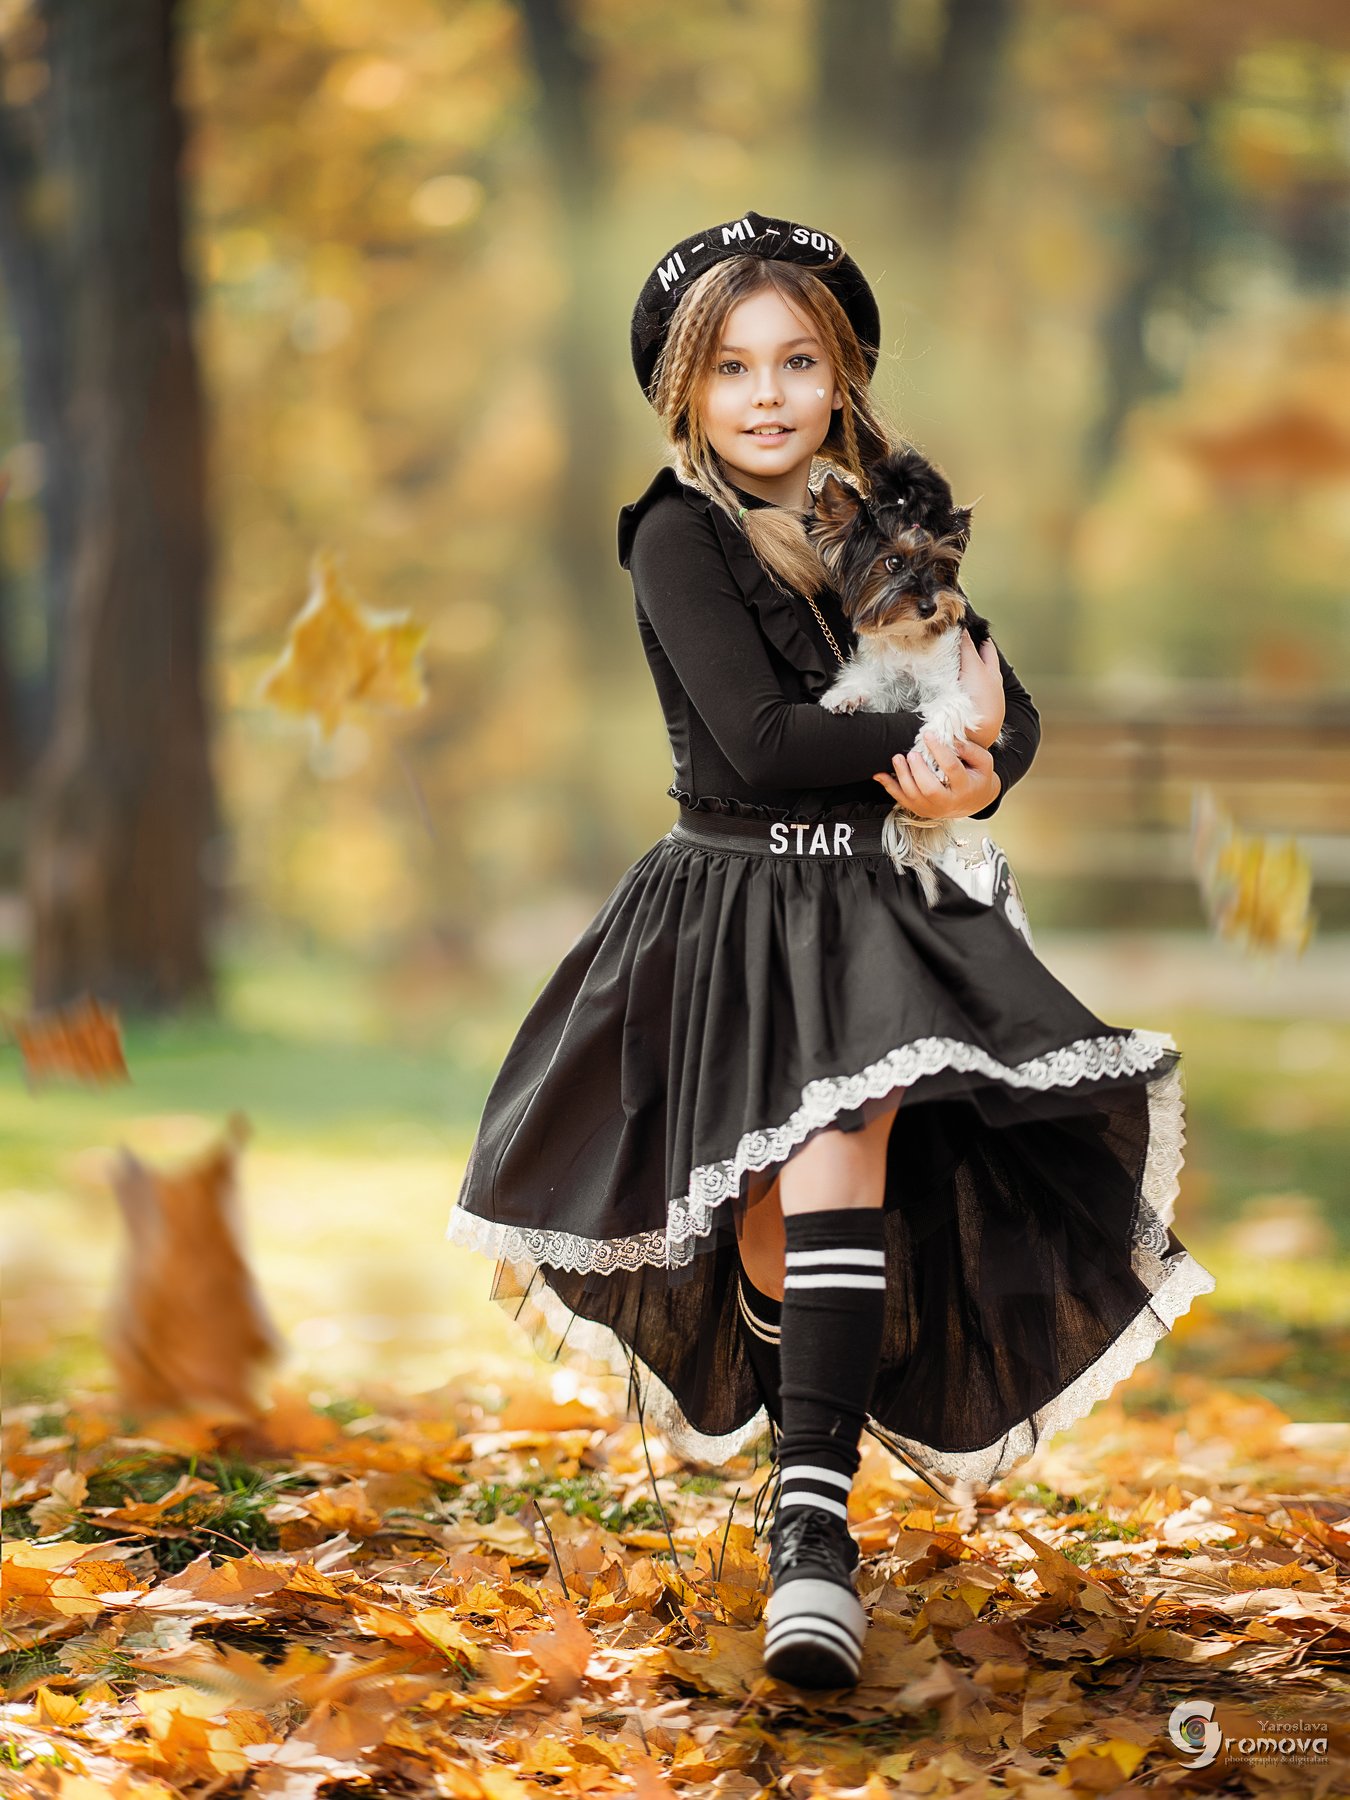 осень, девочка, бег, собака, друг, веселье, листва, листья, Ярослава Громова